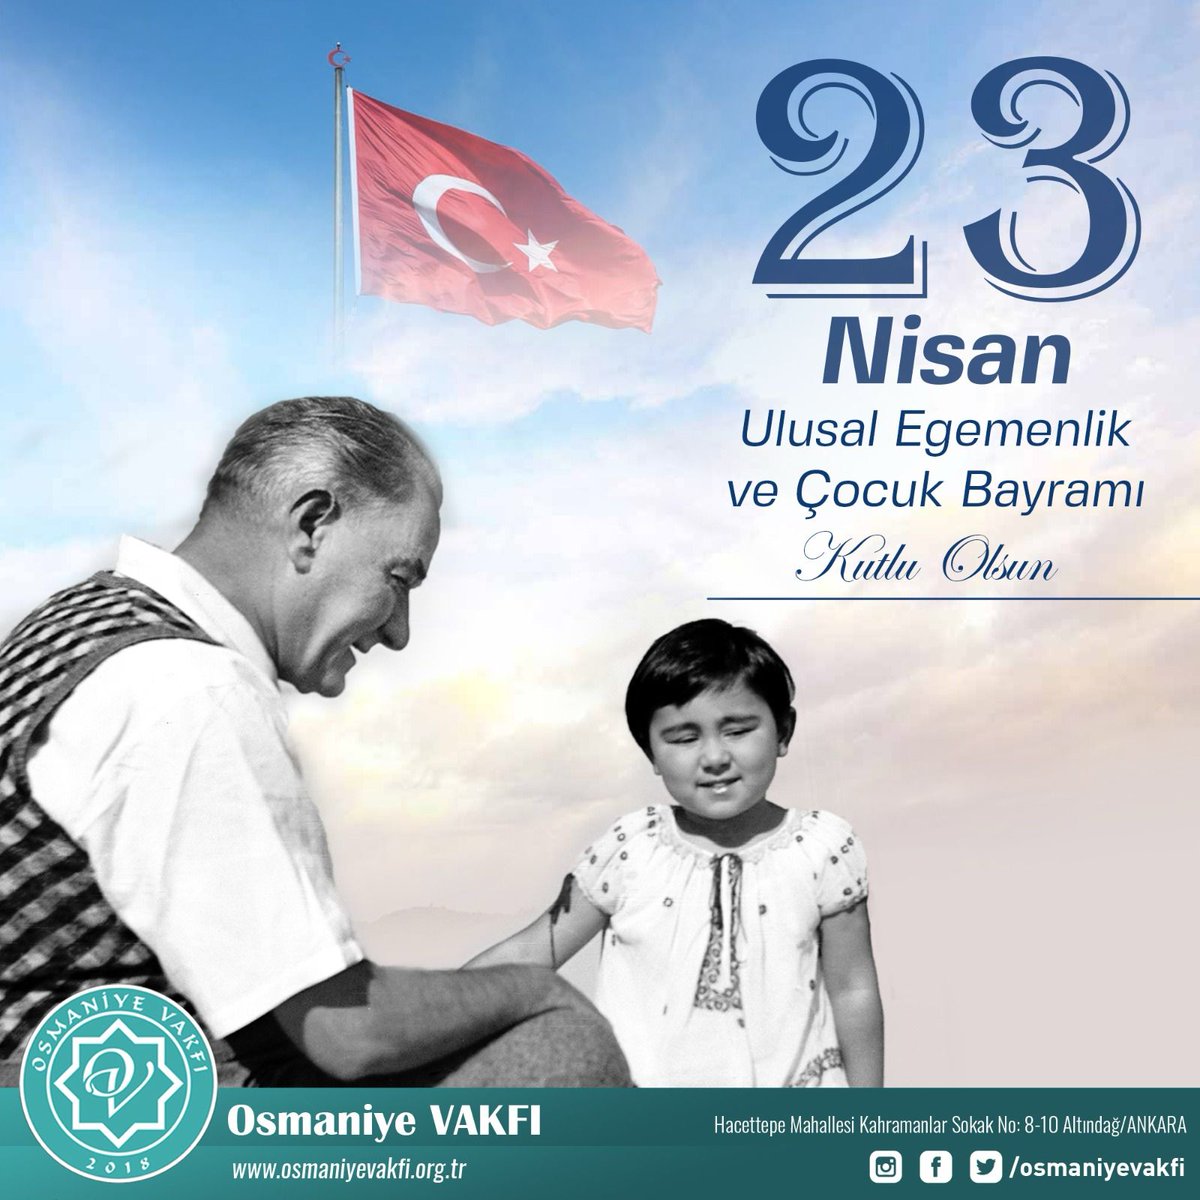 Türkiye Büyük Millet Meclisi’mizin kuruluşunun 104. yılı ve 23 Nisan Ulusal Egemenlik ve Çocuk Bayramı’mız kutlu olsun. Ne Mutlu Türküm Diyene! 🇹🇷